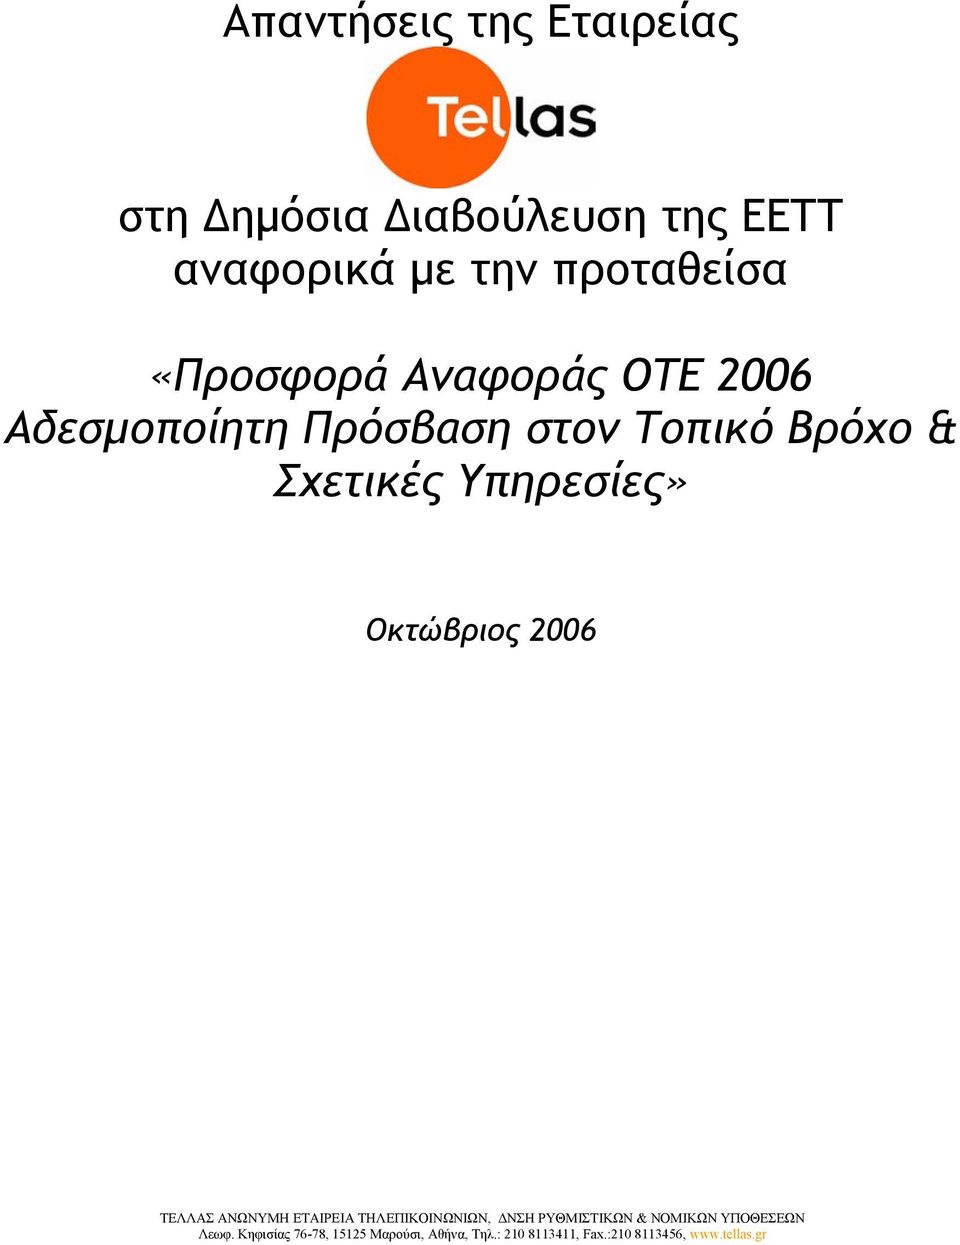 Αναφοράς ΟΤΕ 2006 Αδεσµοποίητη Πρόσβαση στον